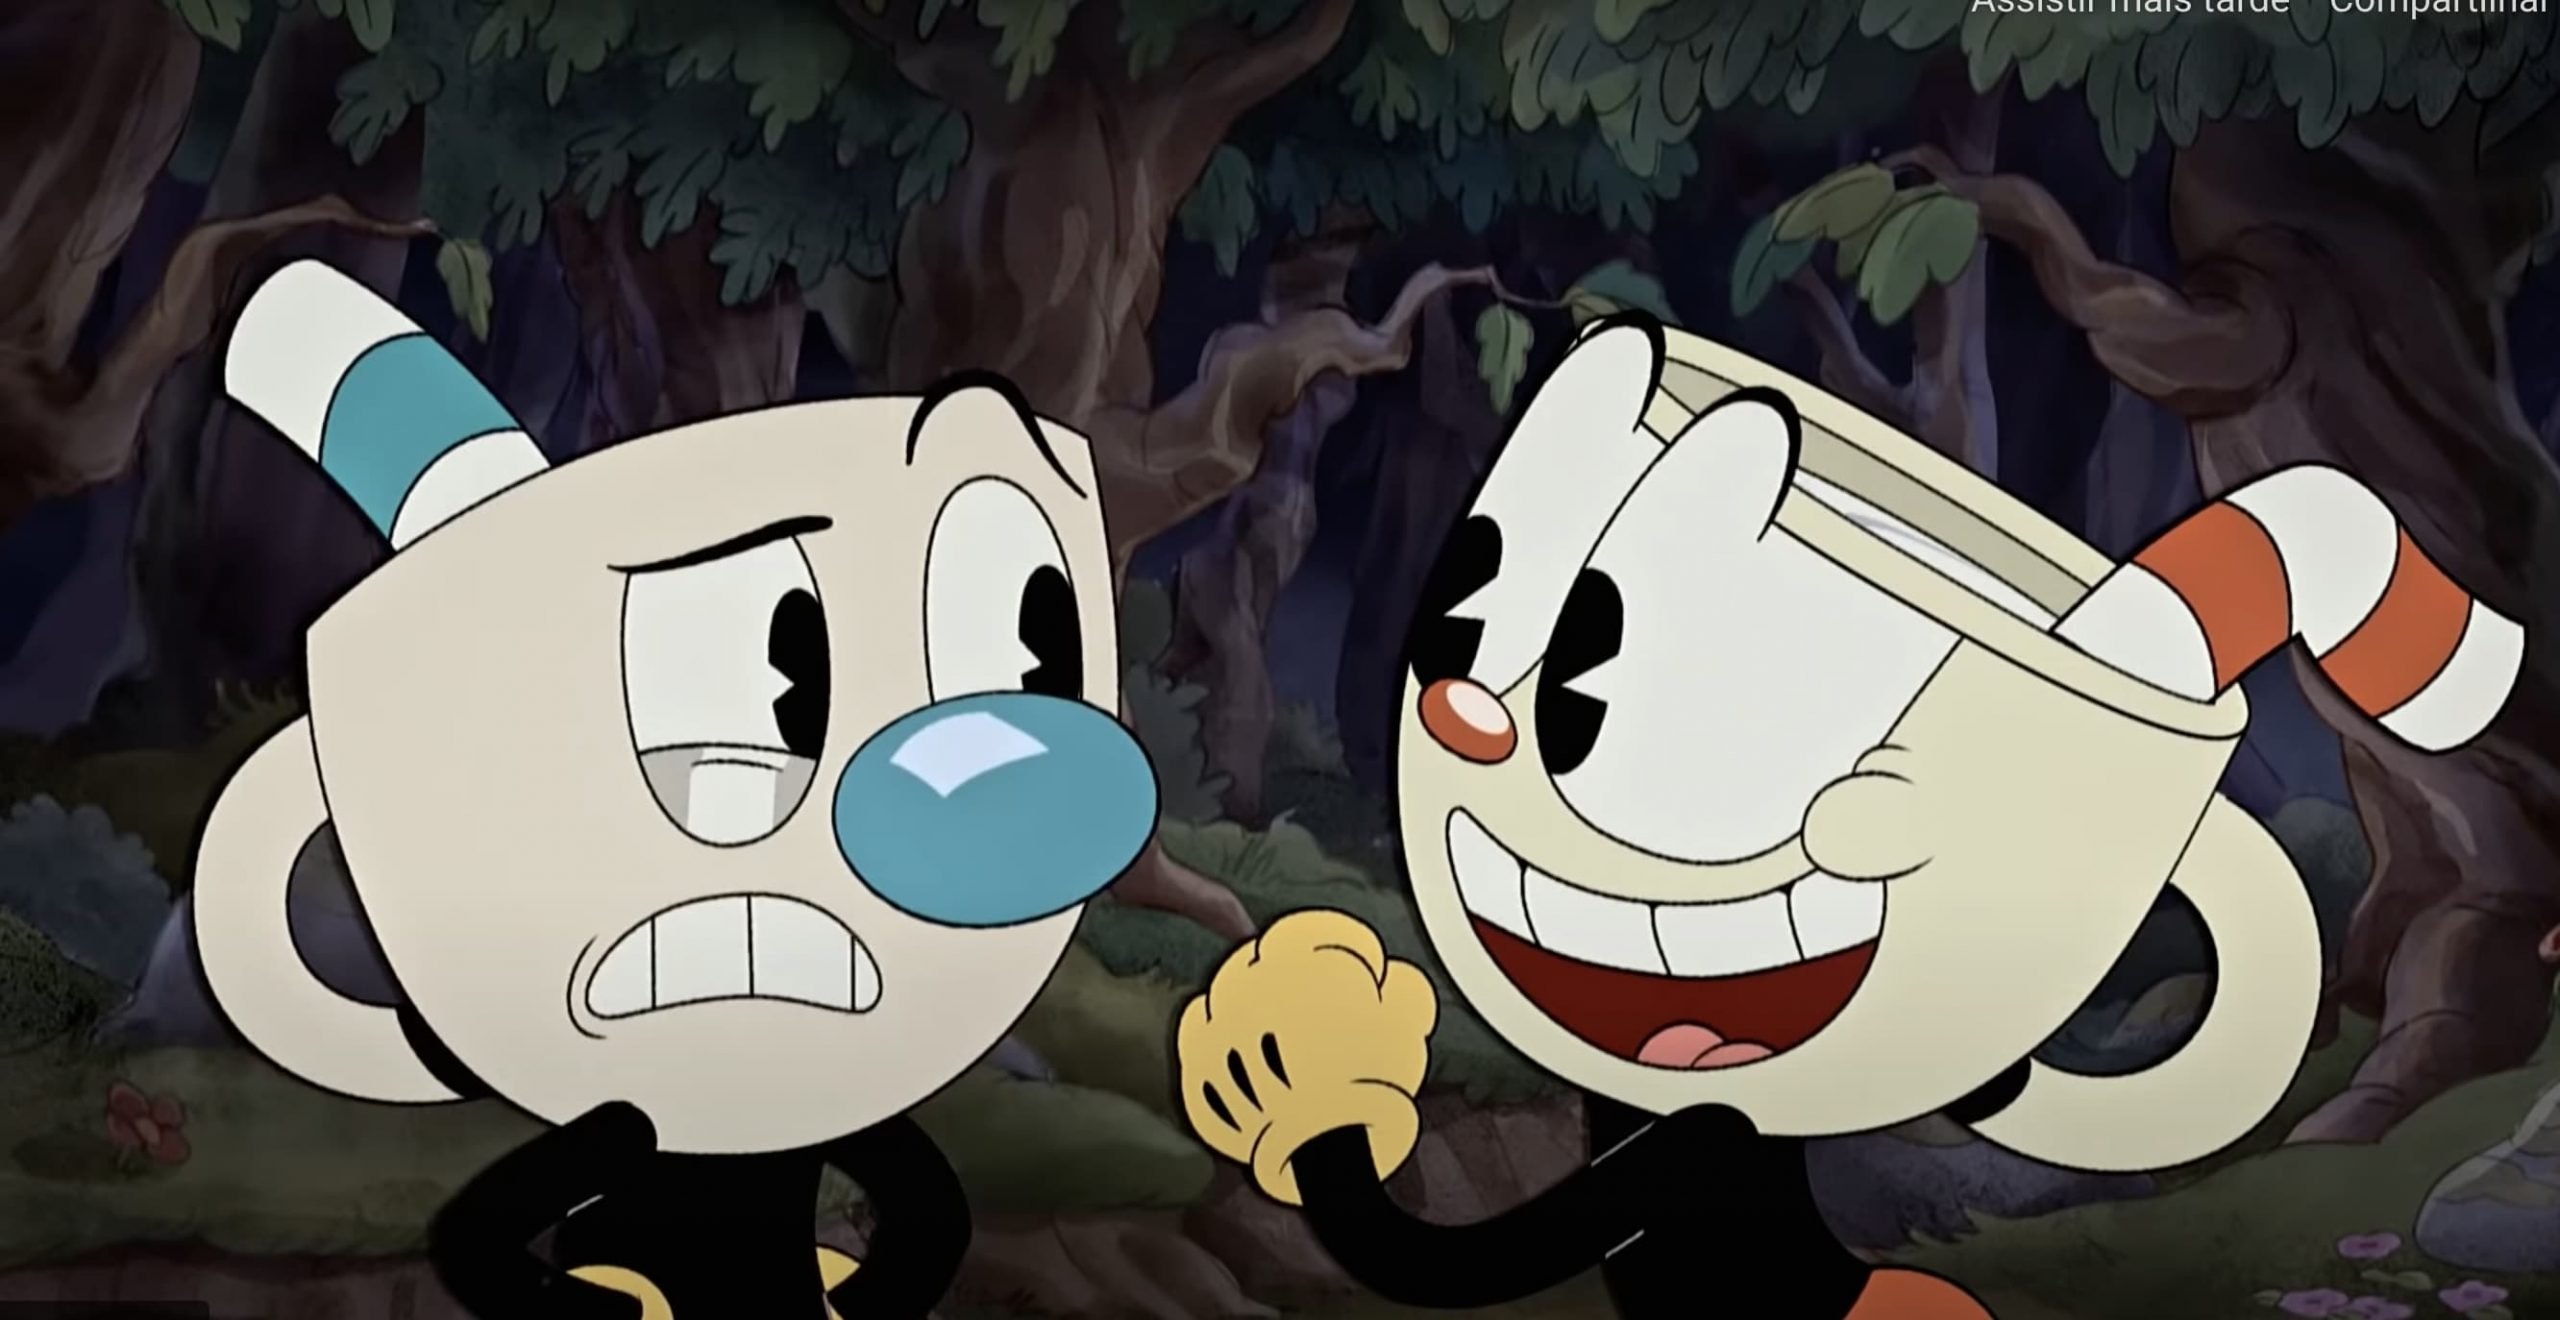 Imagem mostra os personagens Cuphead (à direita) e Mugman (à esquerda), protagonistas da série The Cuphead Show, que estreia na Netflix